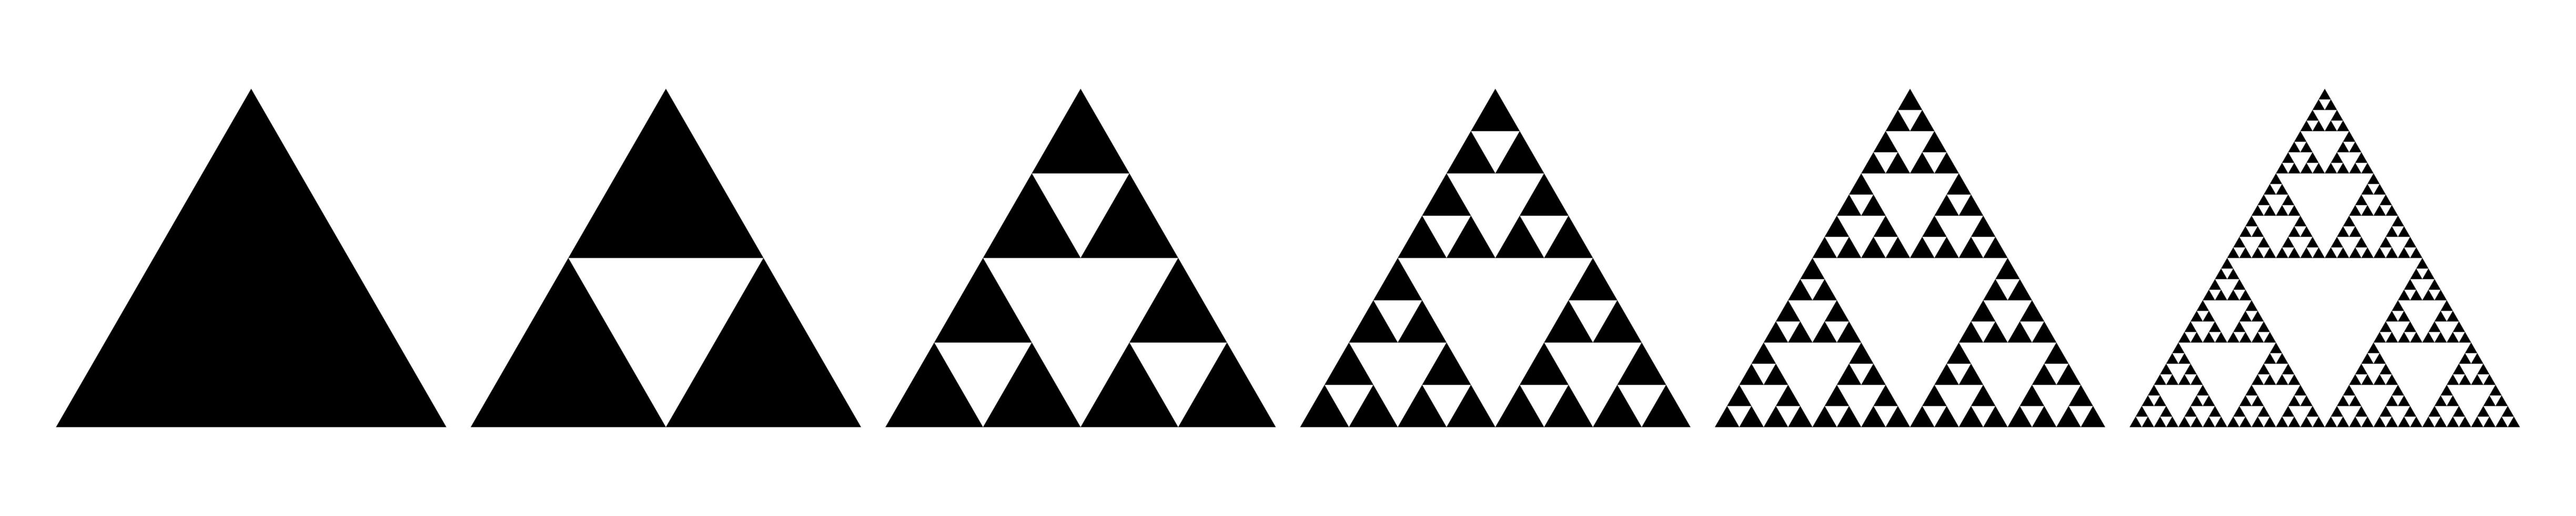 evoluzione del triangolo di sierpinski passaggi per la costruzione della guarnizione sierpinski vettore